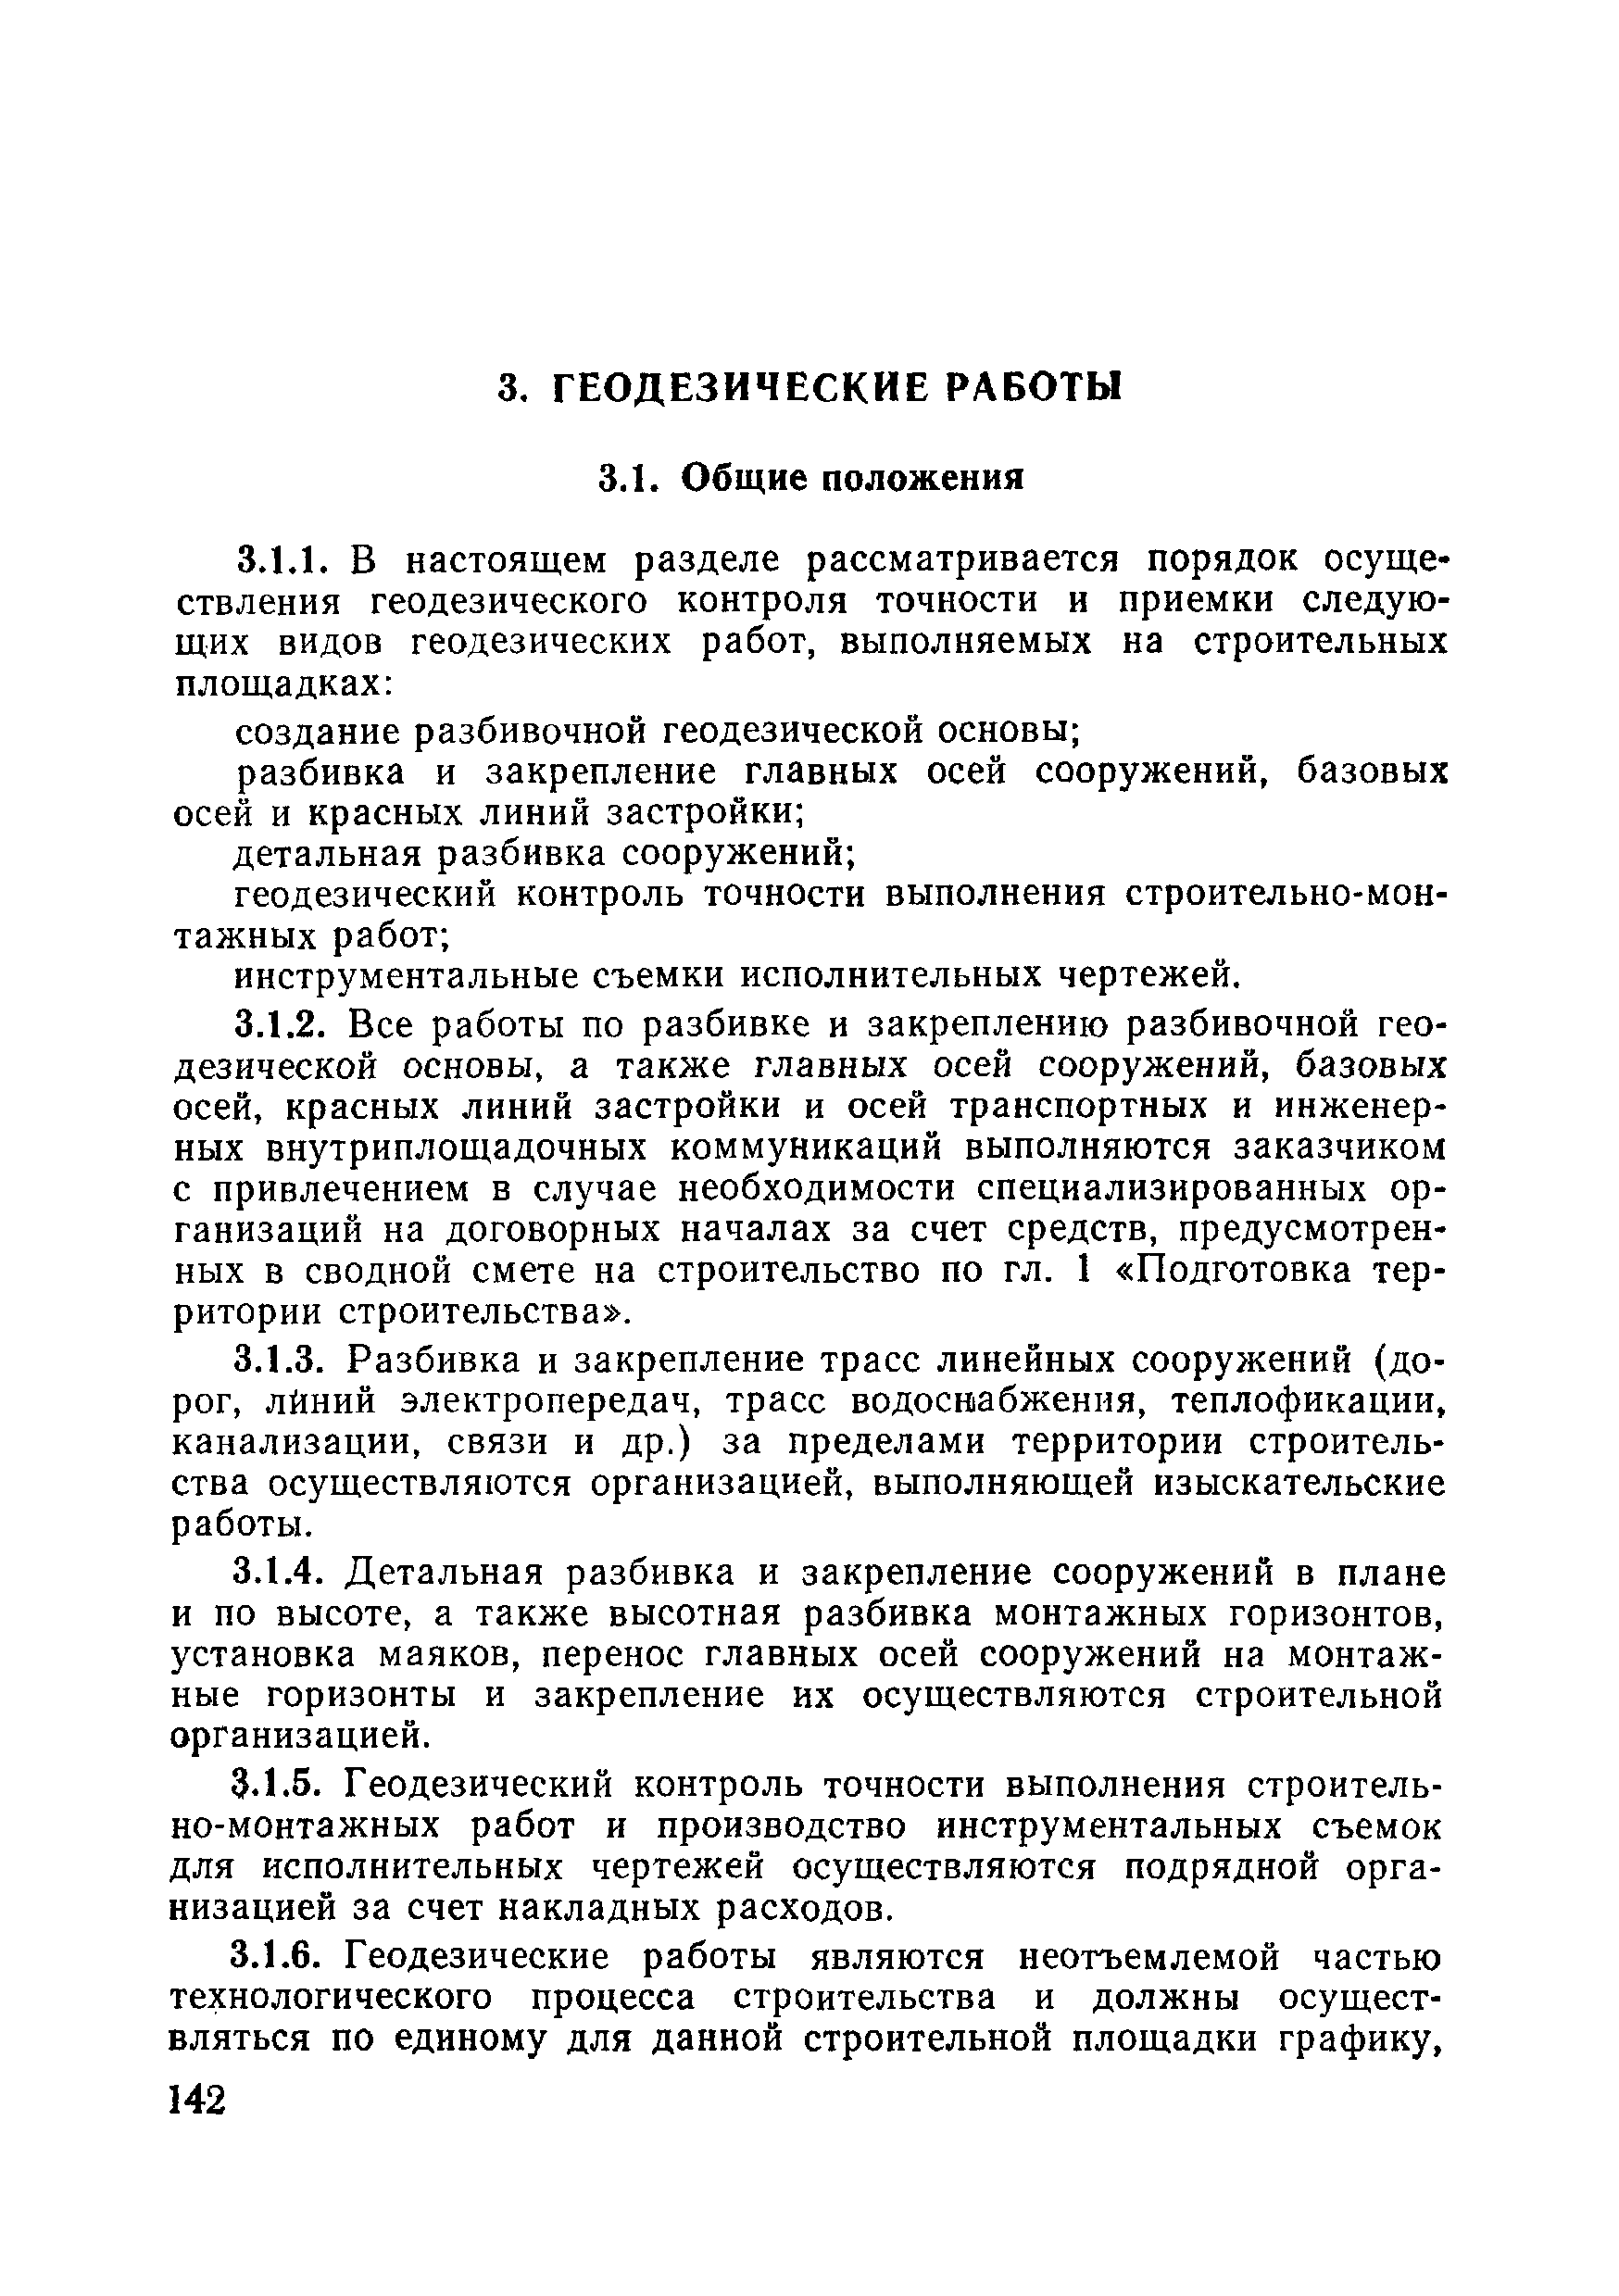 ВСН 09-81 МО РФ